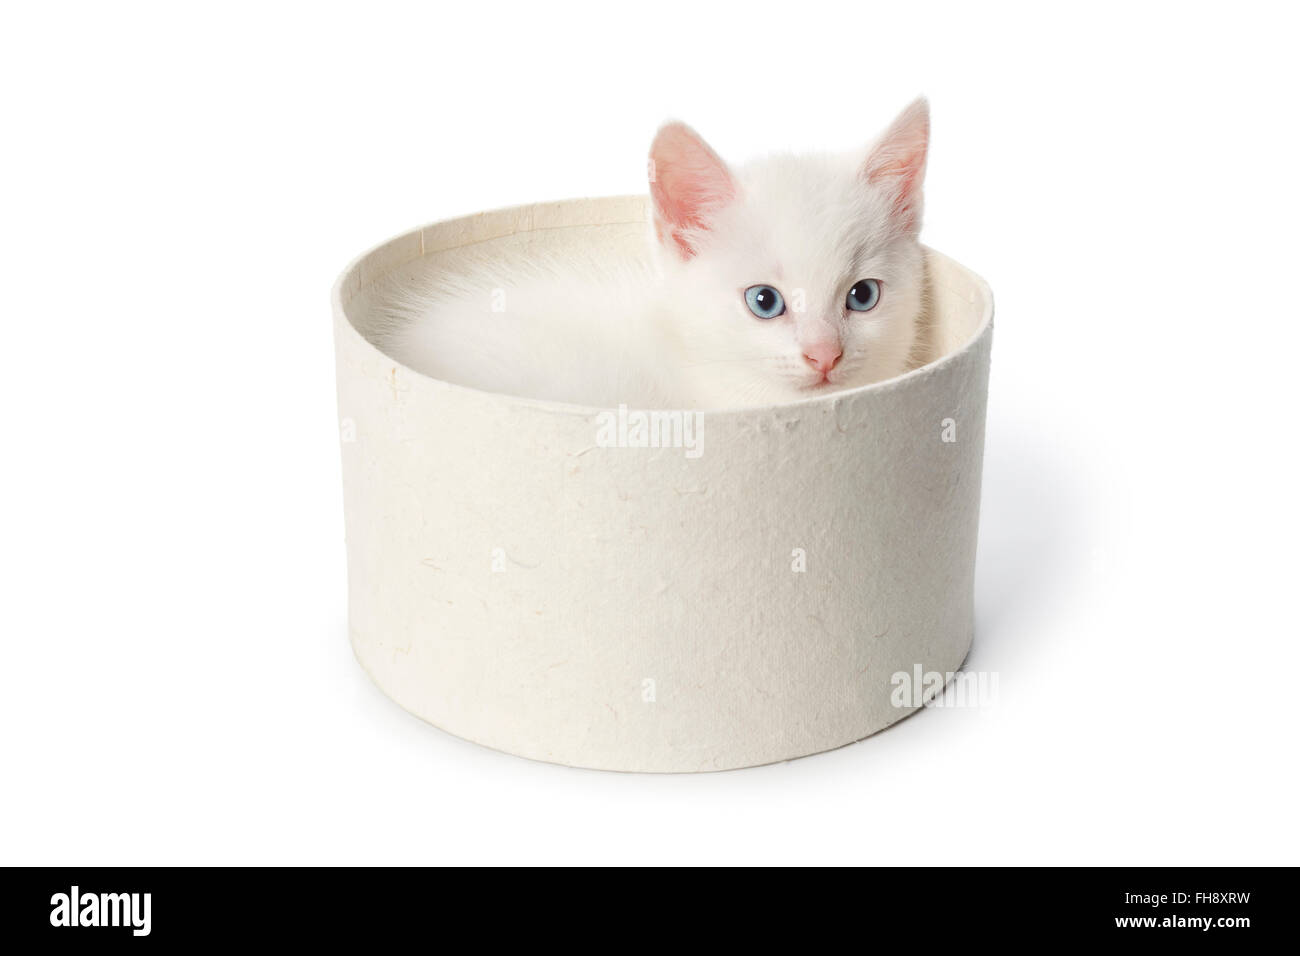 Mignon chaton blanc aux yeux bleus dans une boîte sur fond blanc Banque D'Images